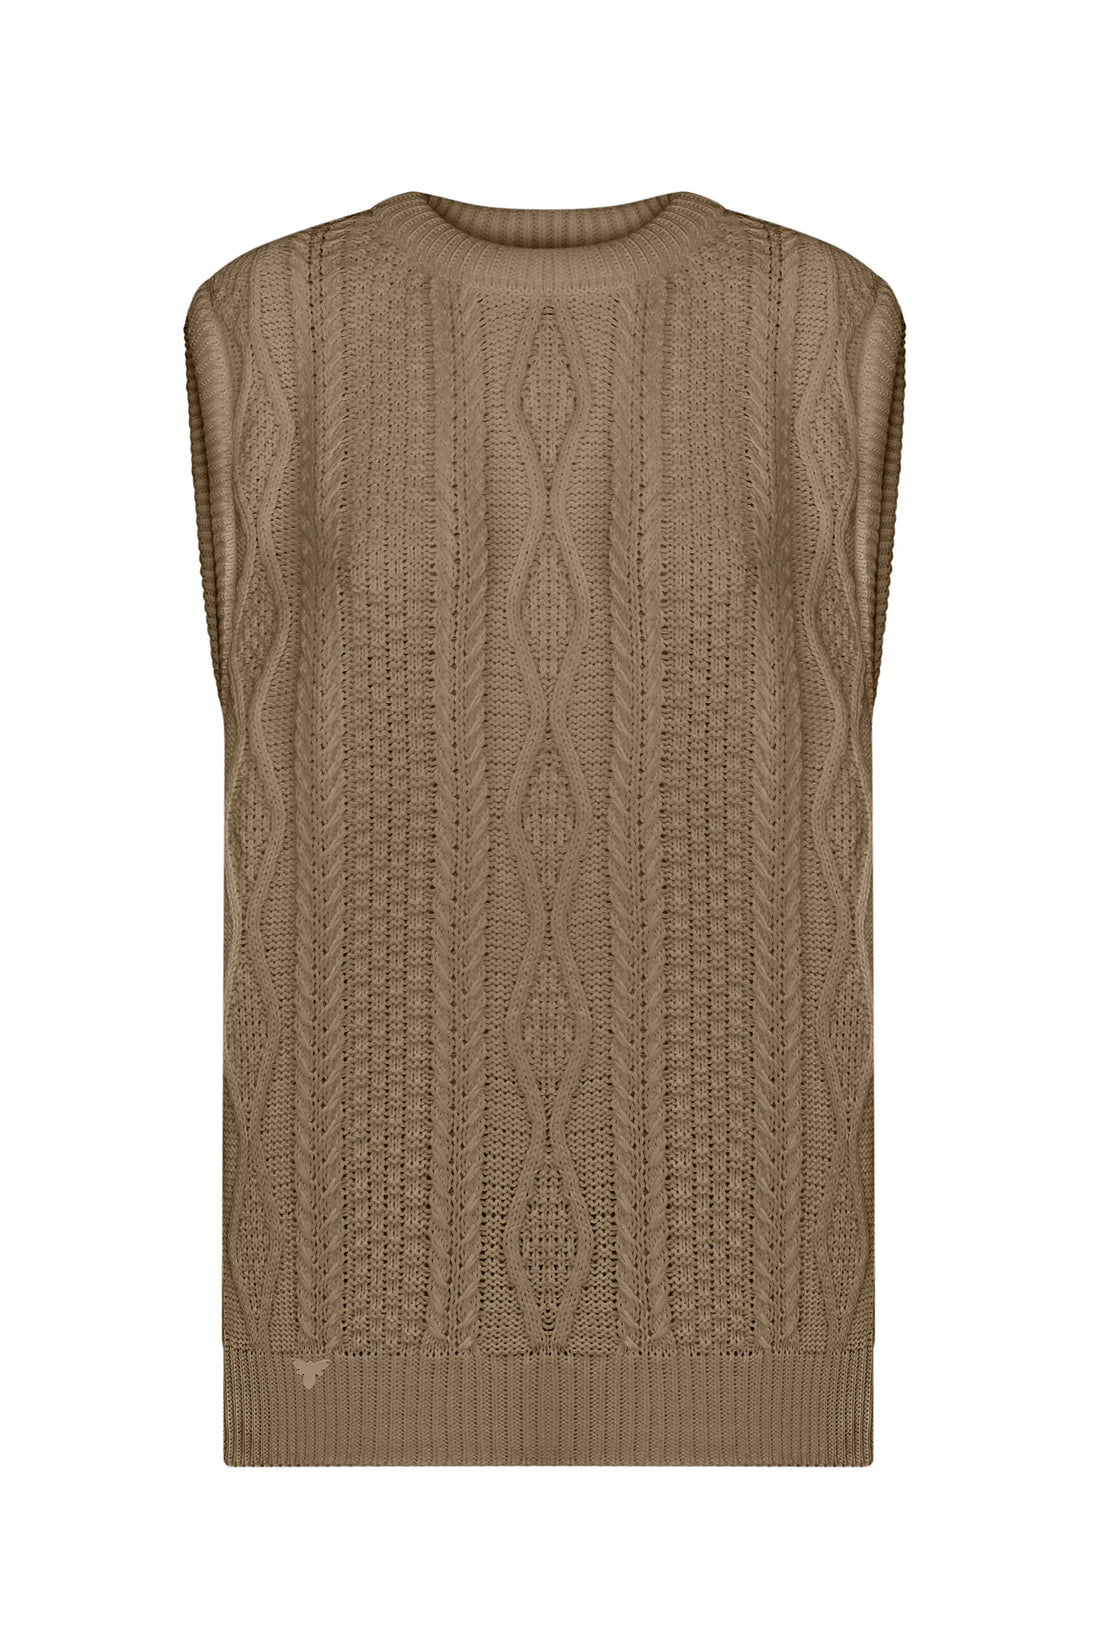 Knitted vest turquoise (K.KVIT, T.MOSCA) JKMR23-01